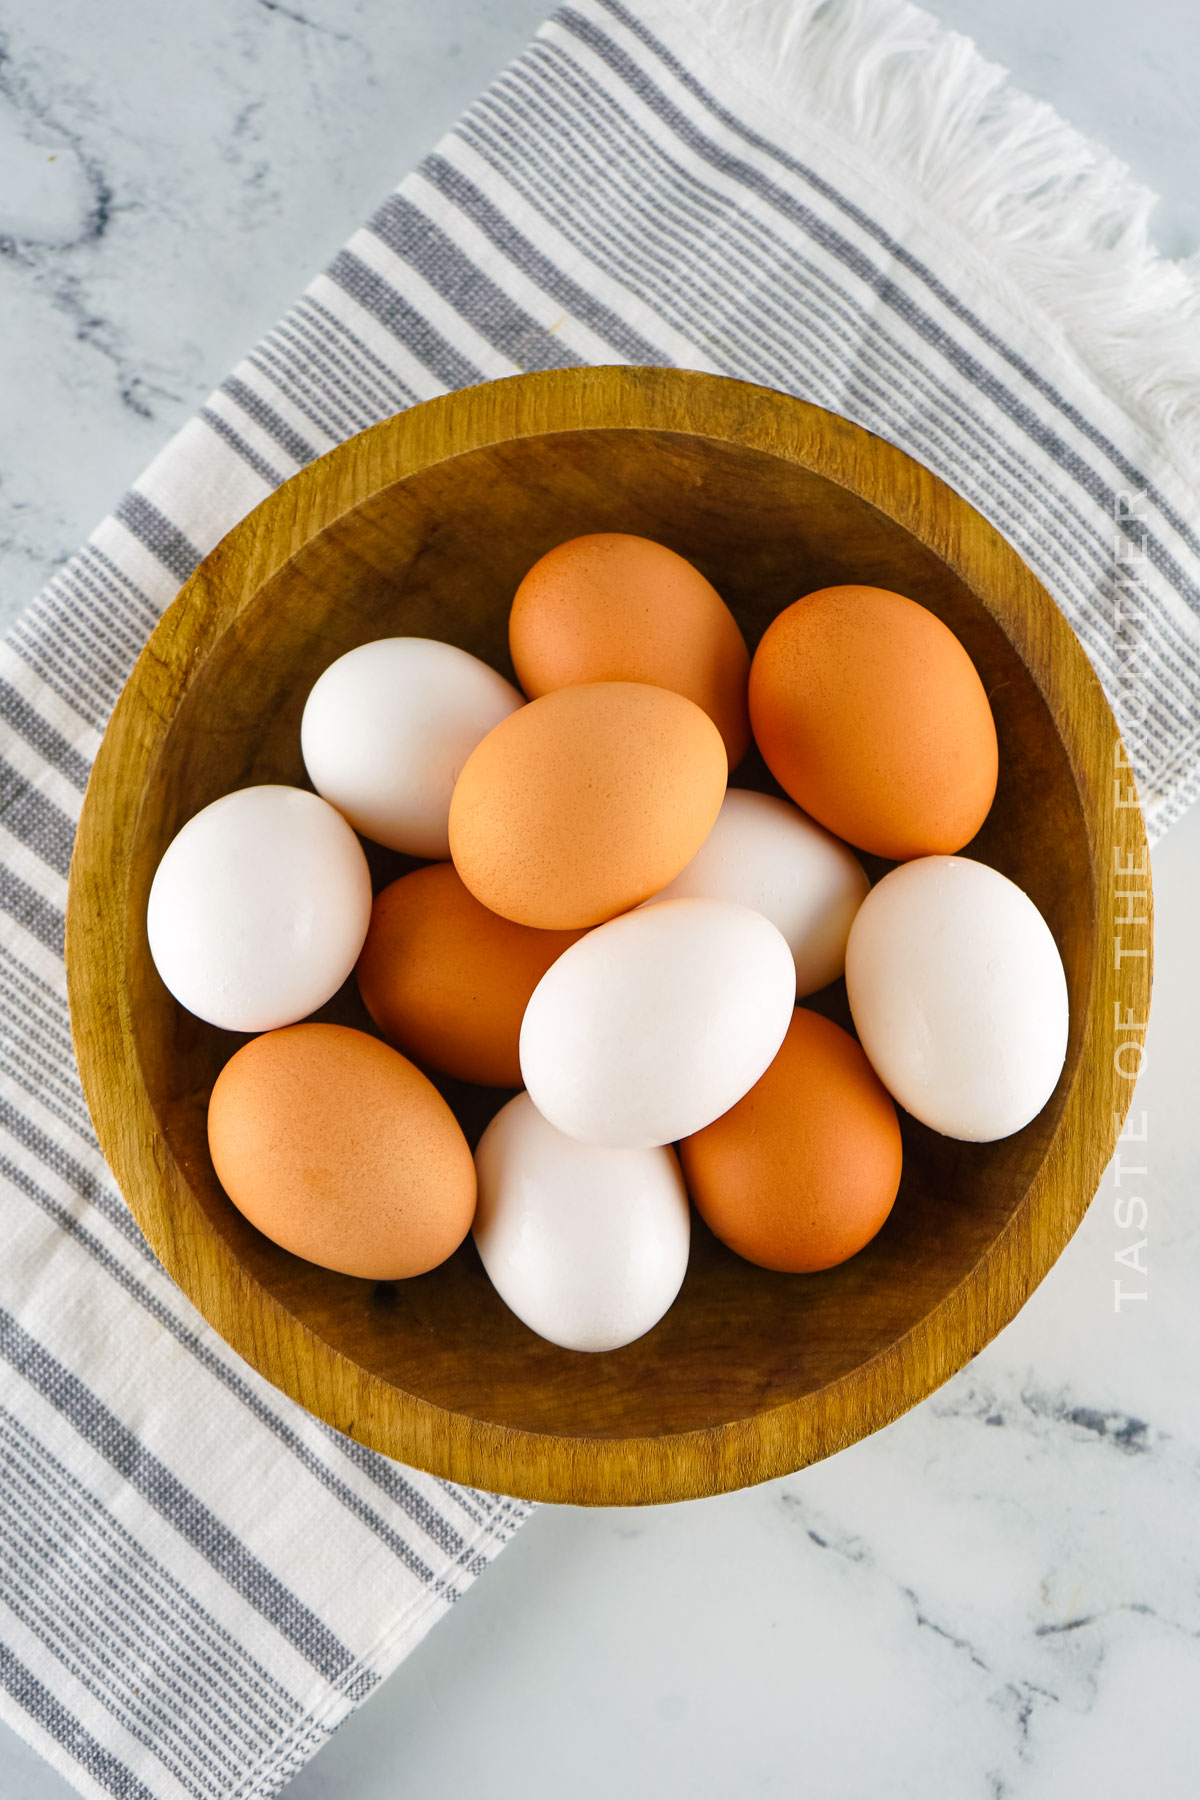 Hard Boiled Eggs ingredients